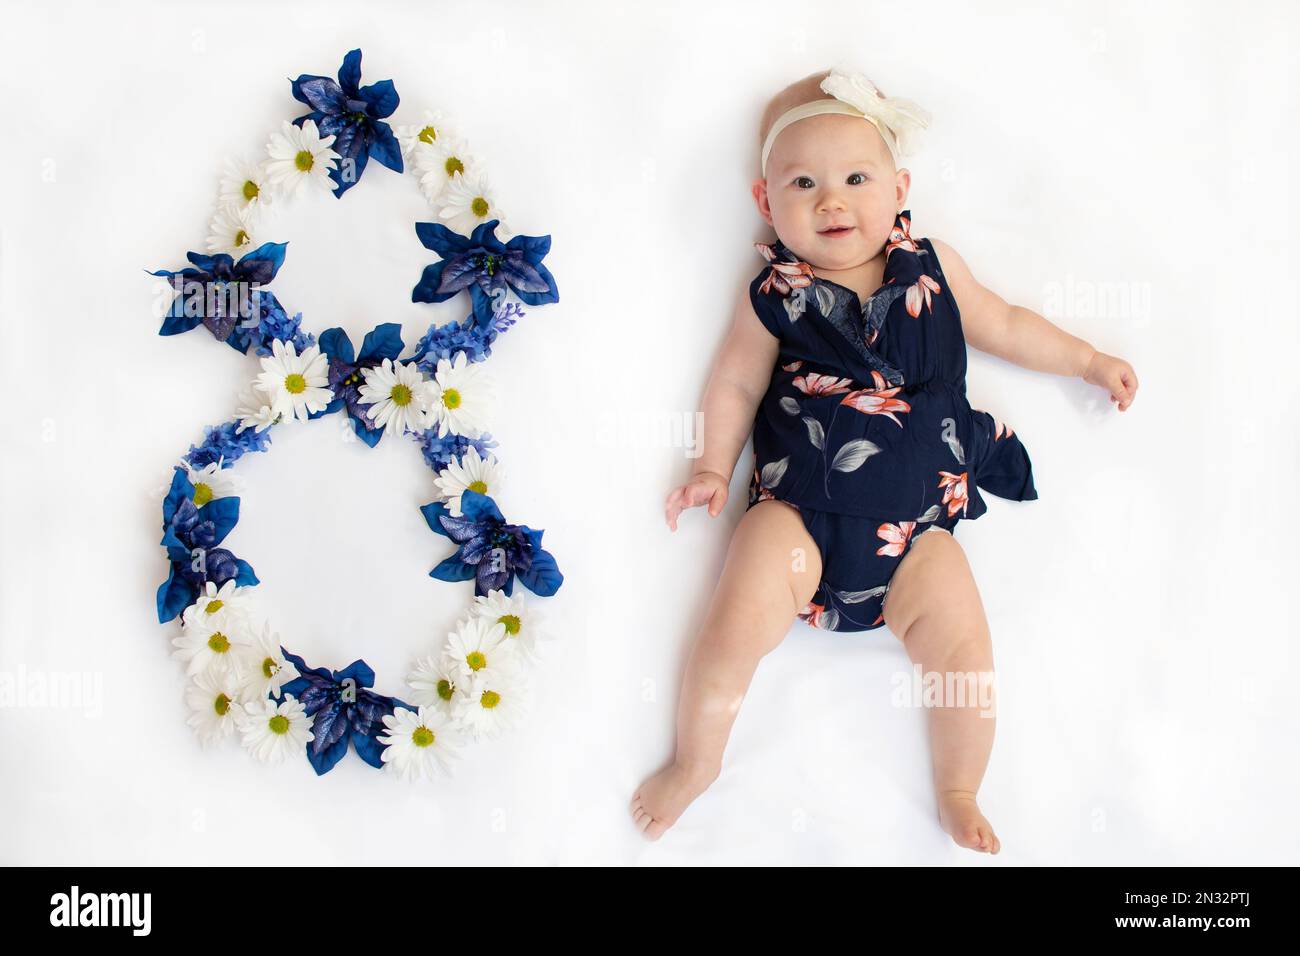 8 mesi bambino immagini e fotografie stock ad alta risoluzione - Alamy